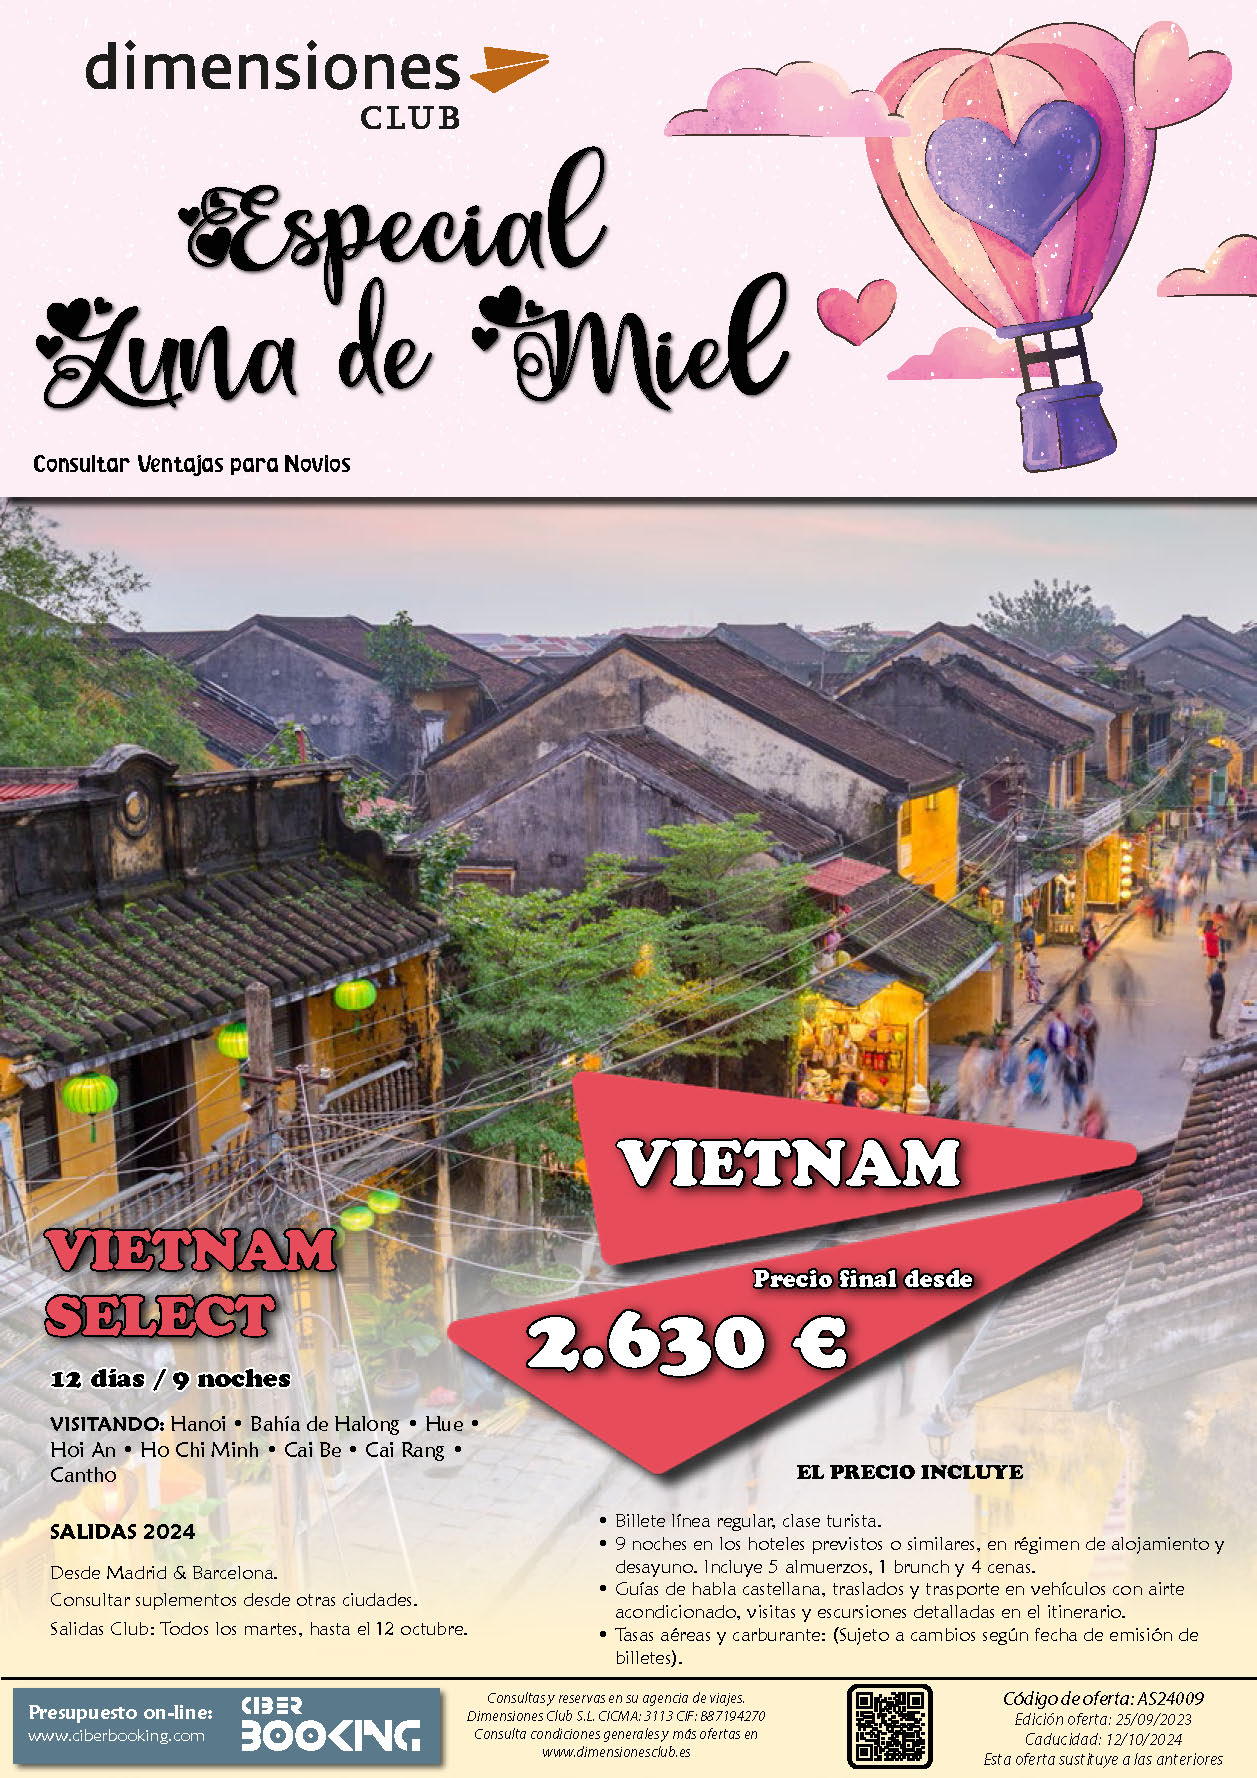 Oferta Dimensiones Club Luna de Miel en Vietnam Select 12 dias salidas desde Madrid y Barcelona Enero a Octubre 2024